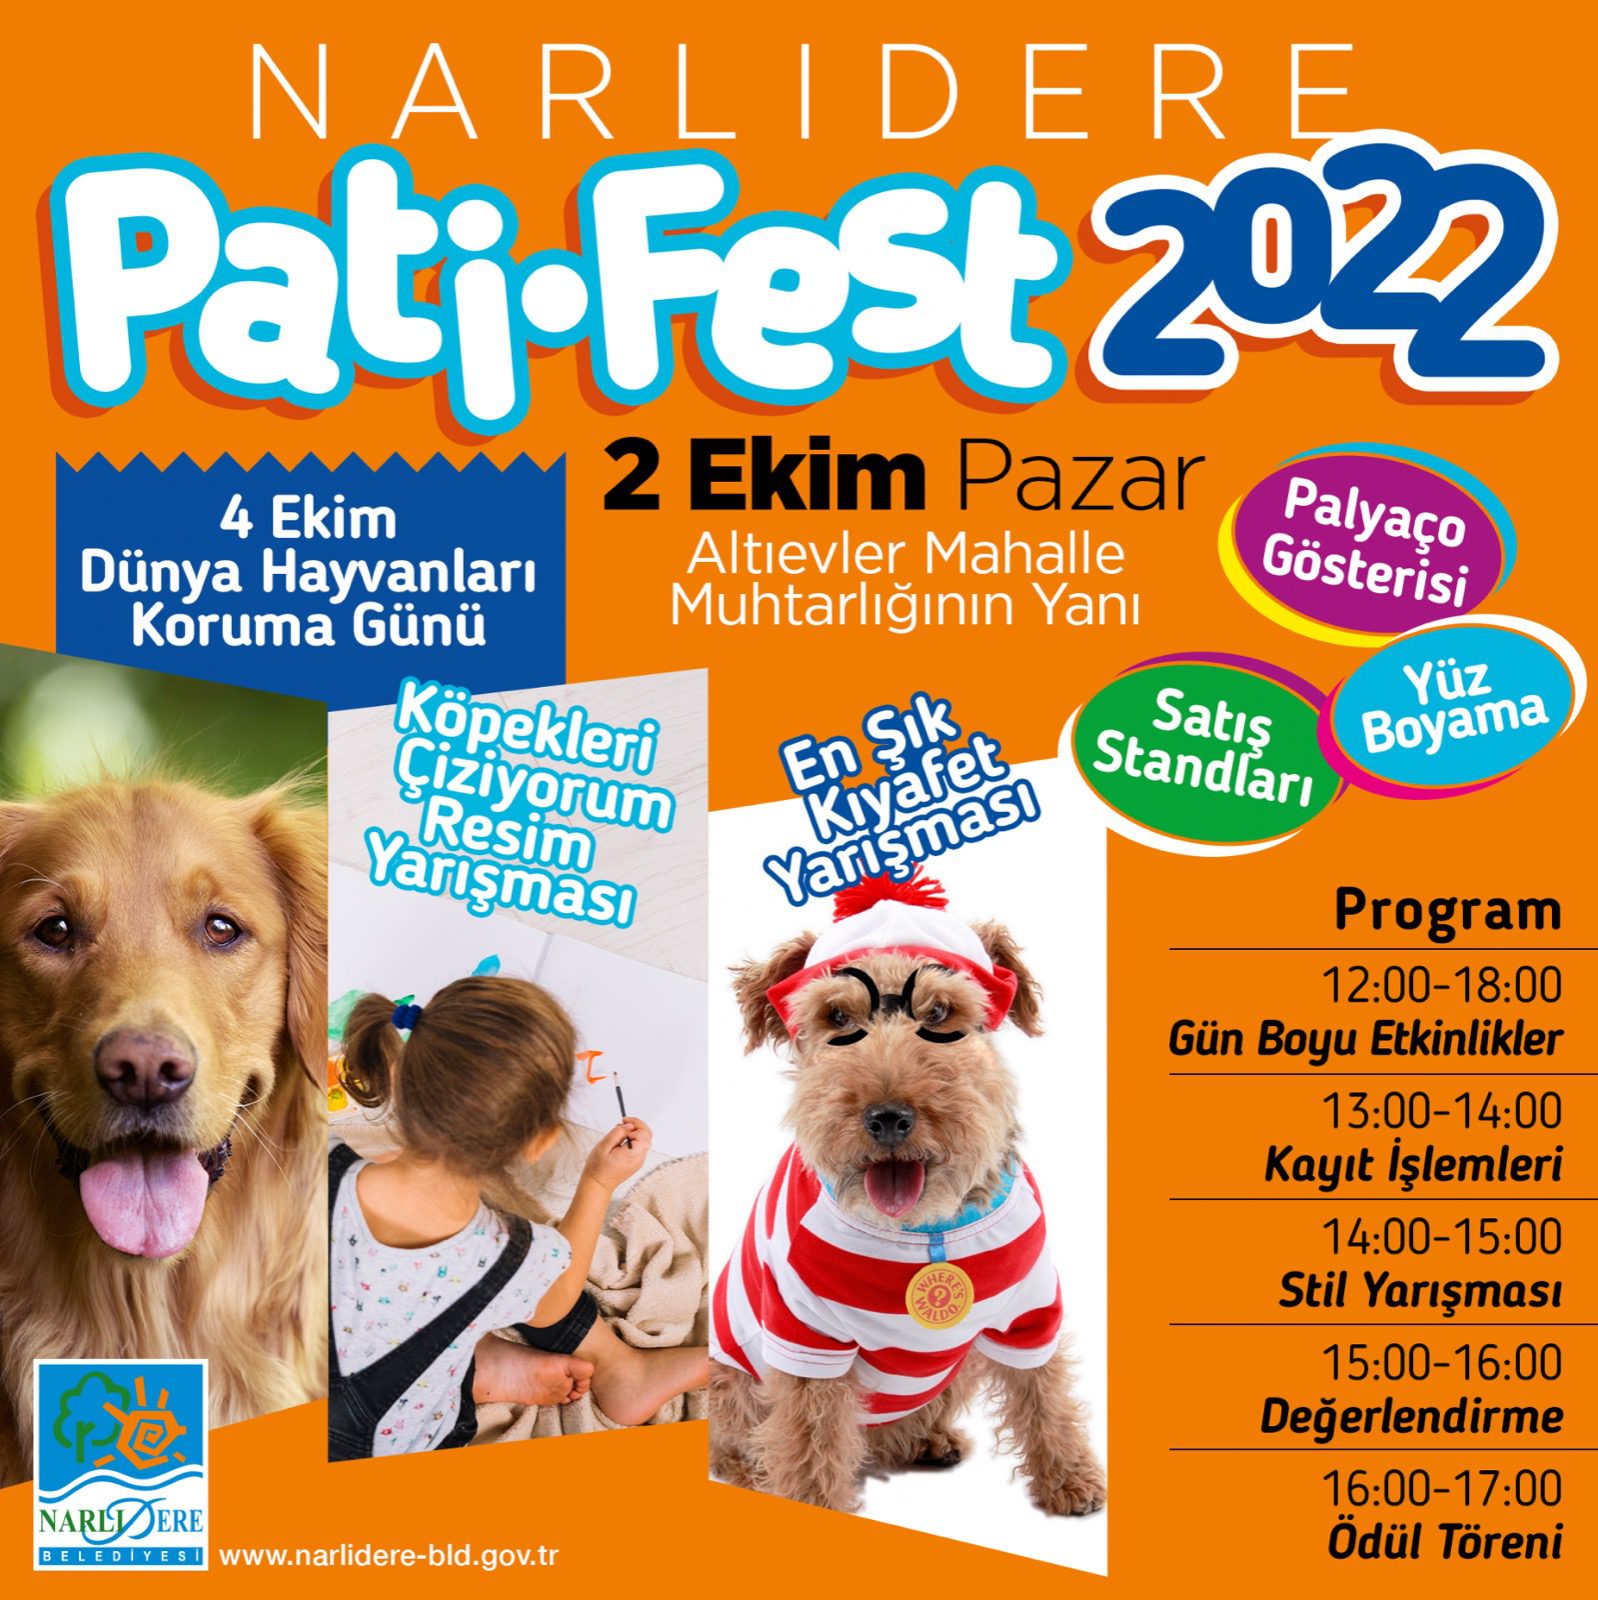 Narlıdere'de Pati-Fest 2022 başlıyor!